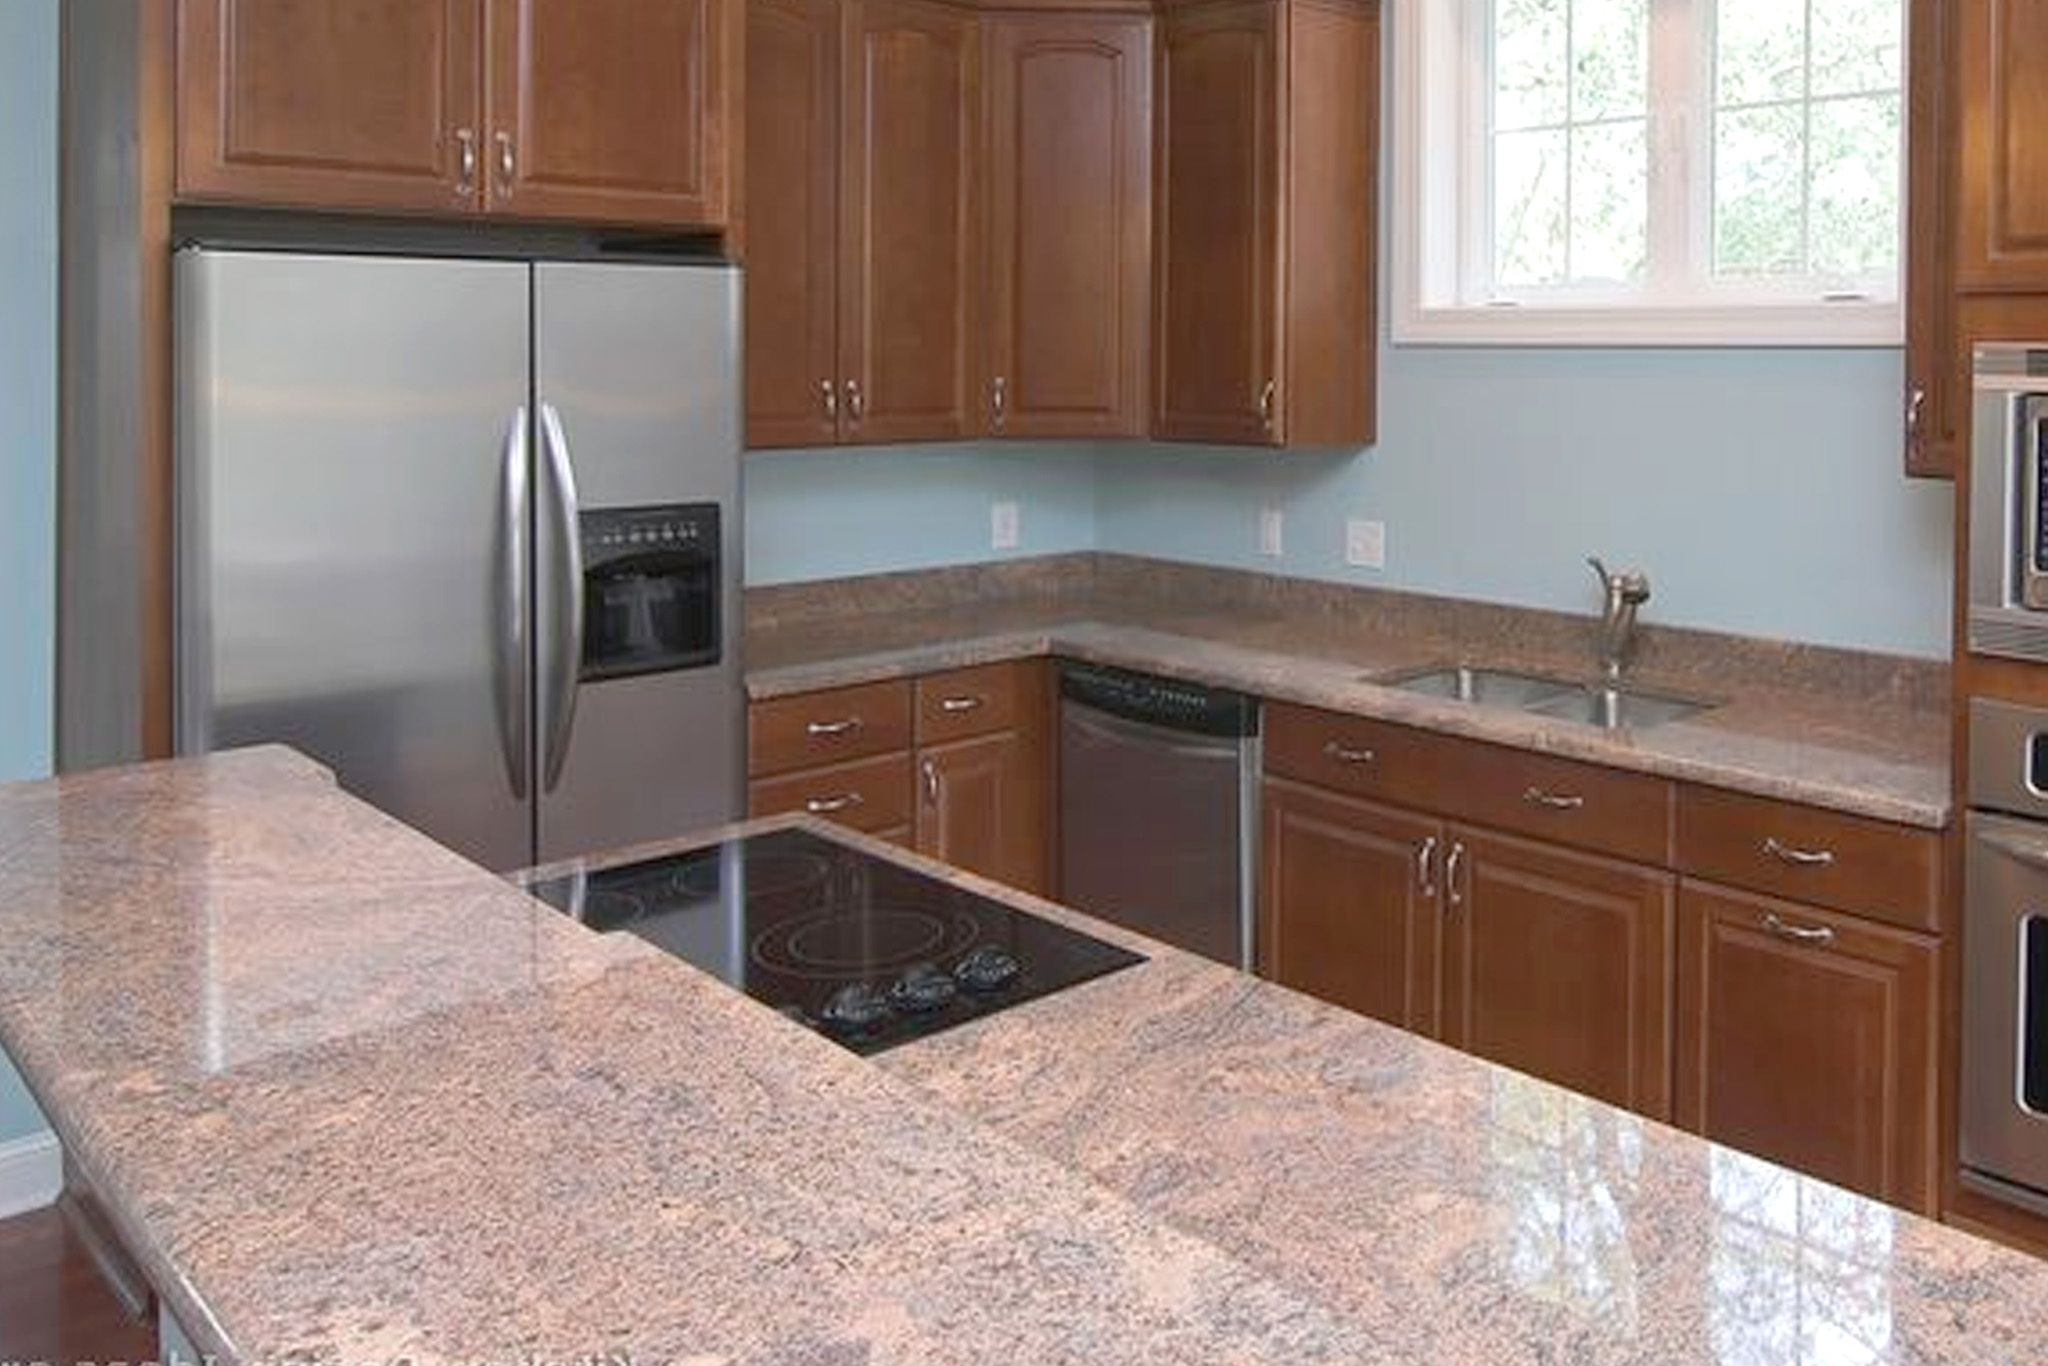 xili red granite kitchen design